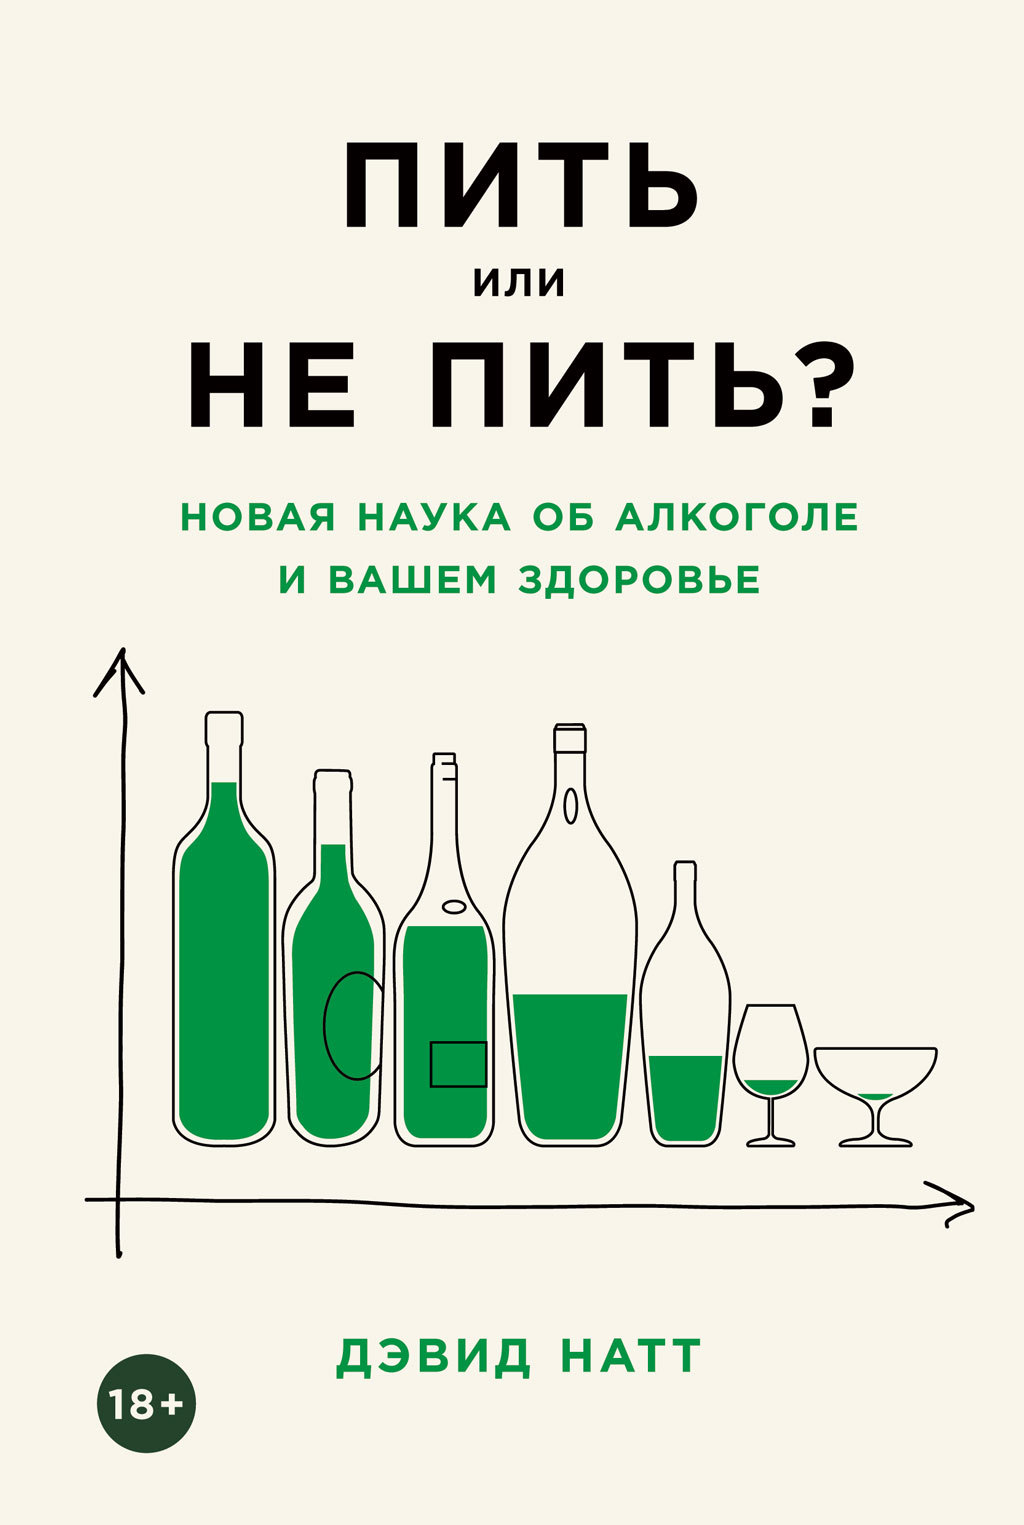 Пить или не пить? Новая наука об алкоголе и вашем здоровье читать онлайн